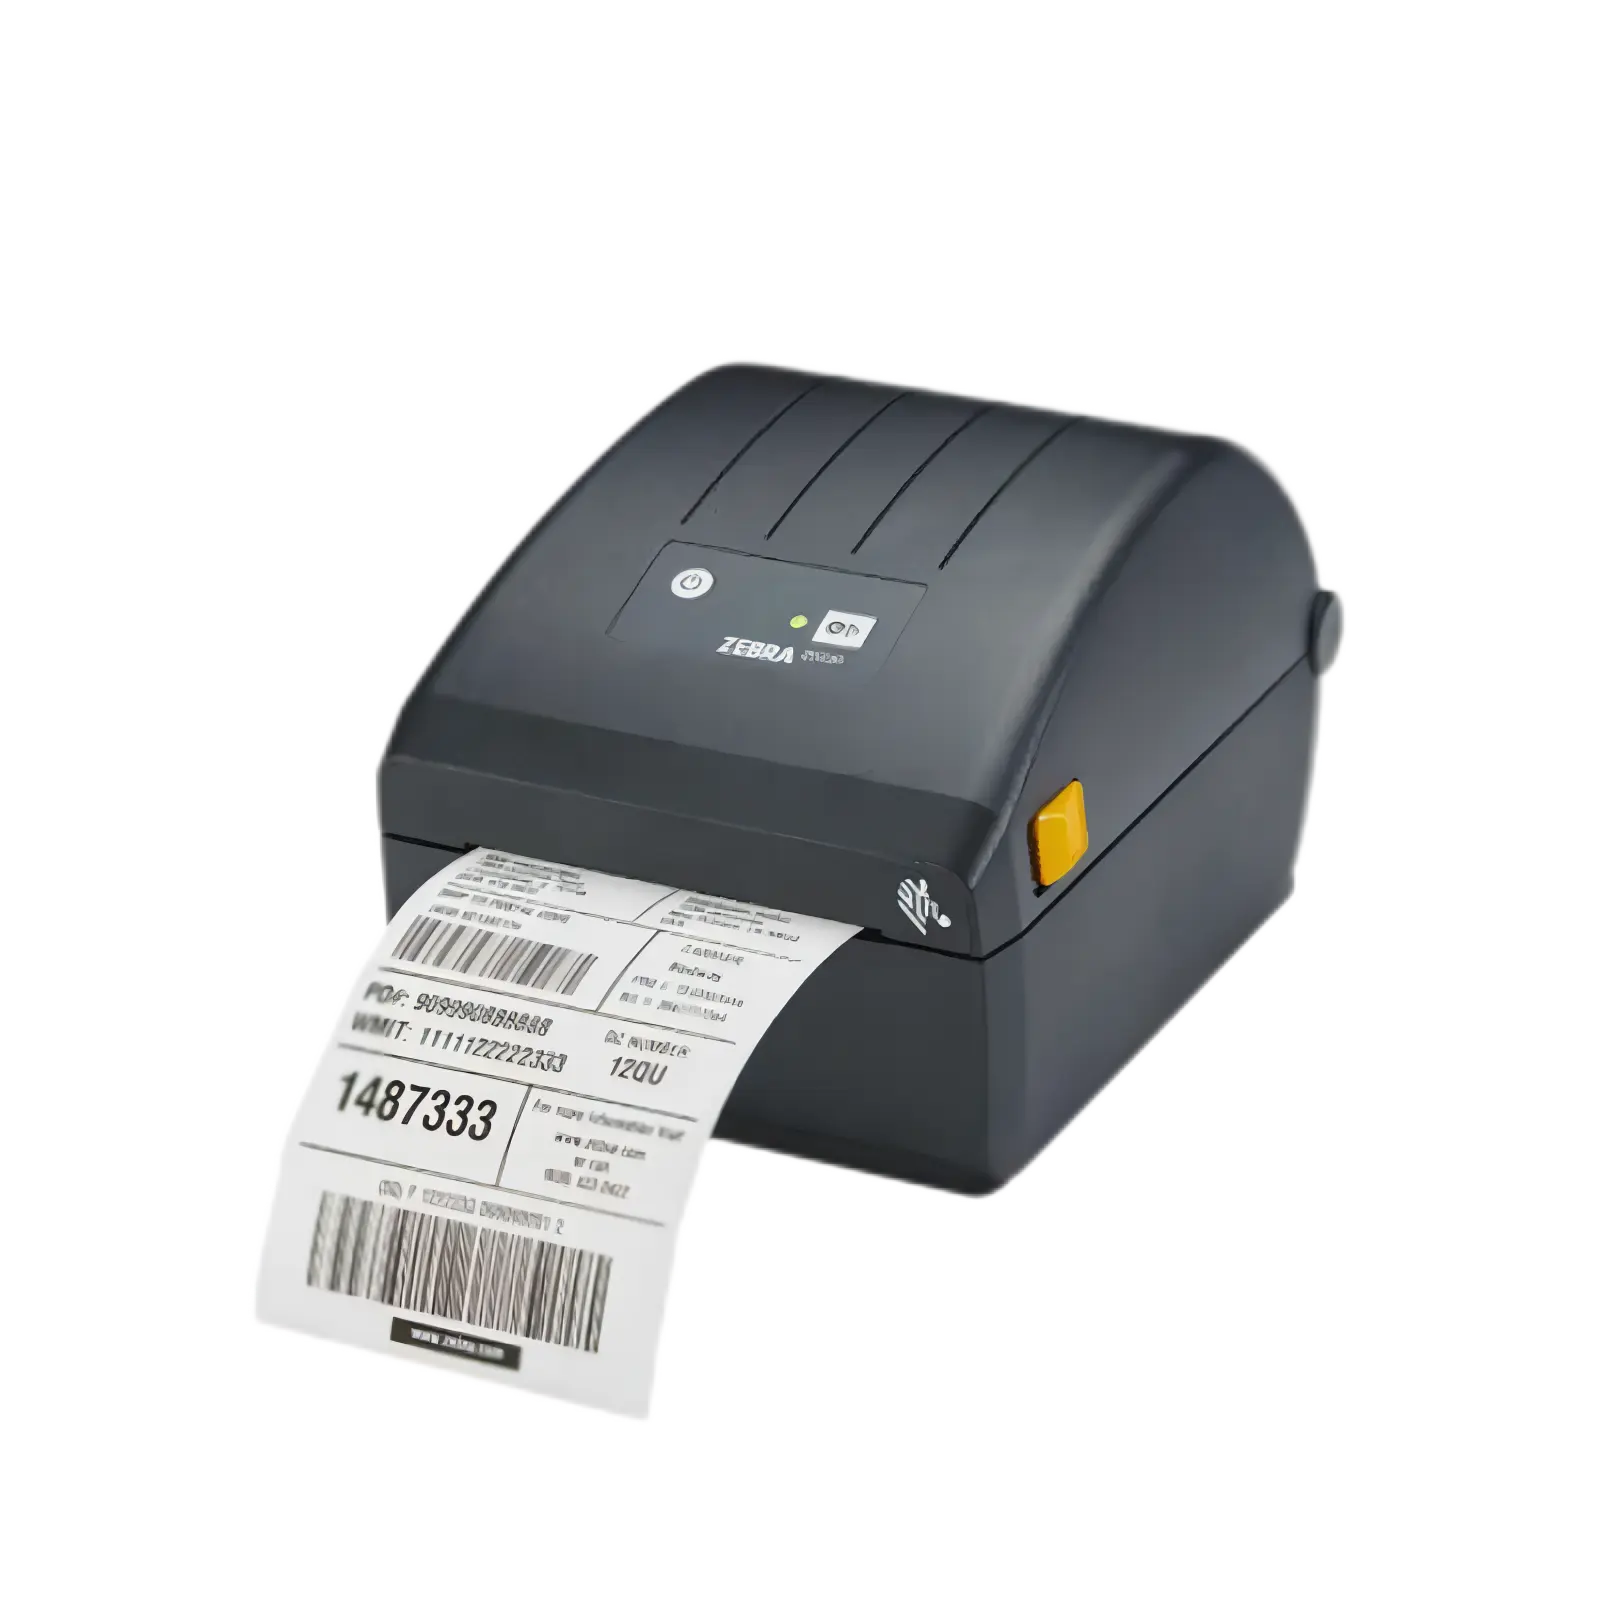 Stampante ZD888t per la sostituzione della Zebra della stampante per codici a barre Desktop a nastro da 4 pollici a trasferimento termico ZD220